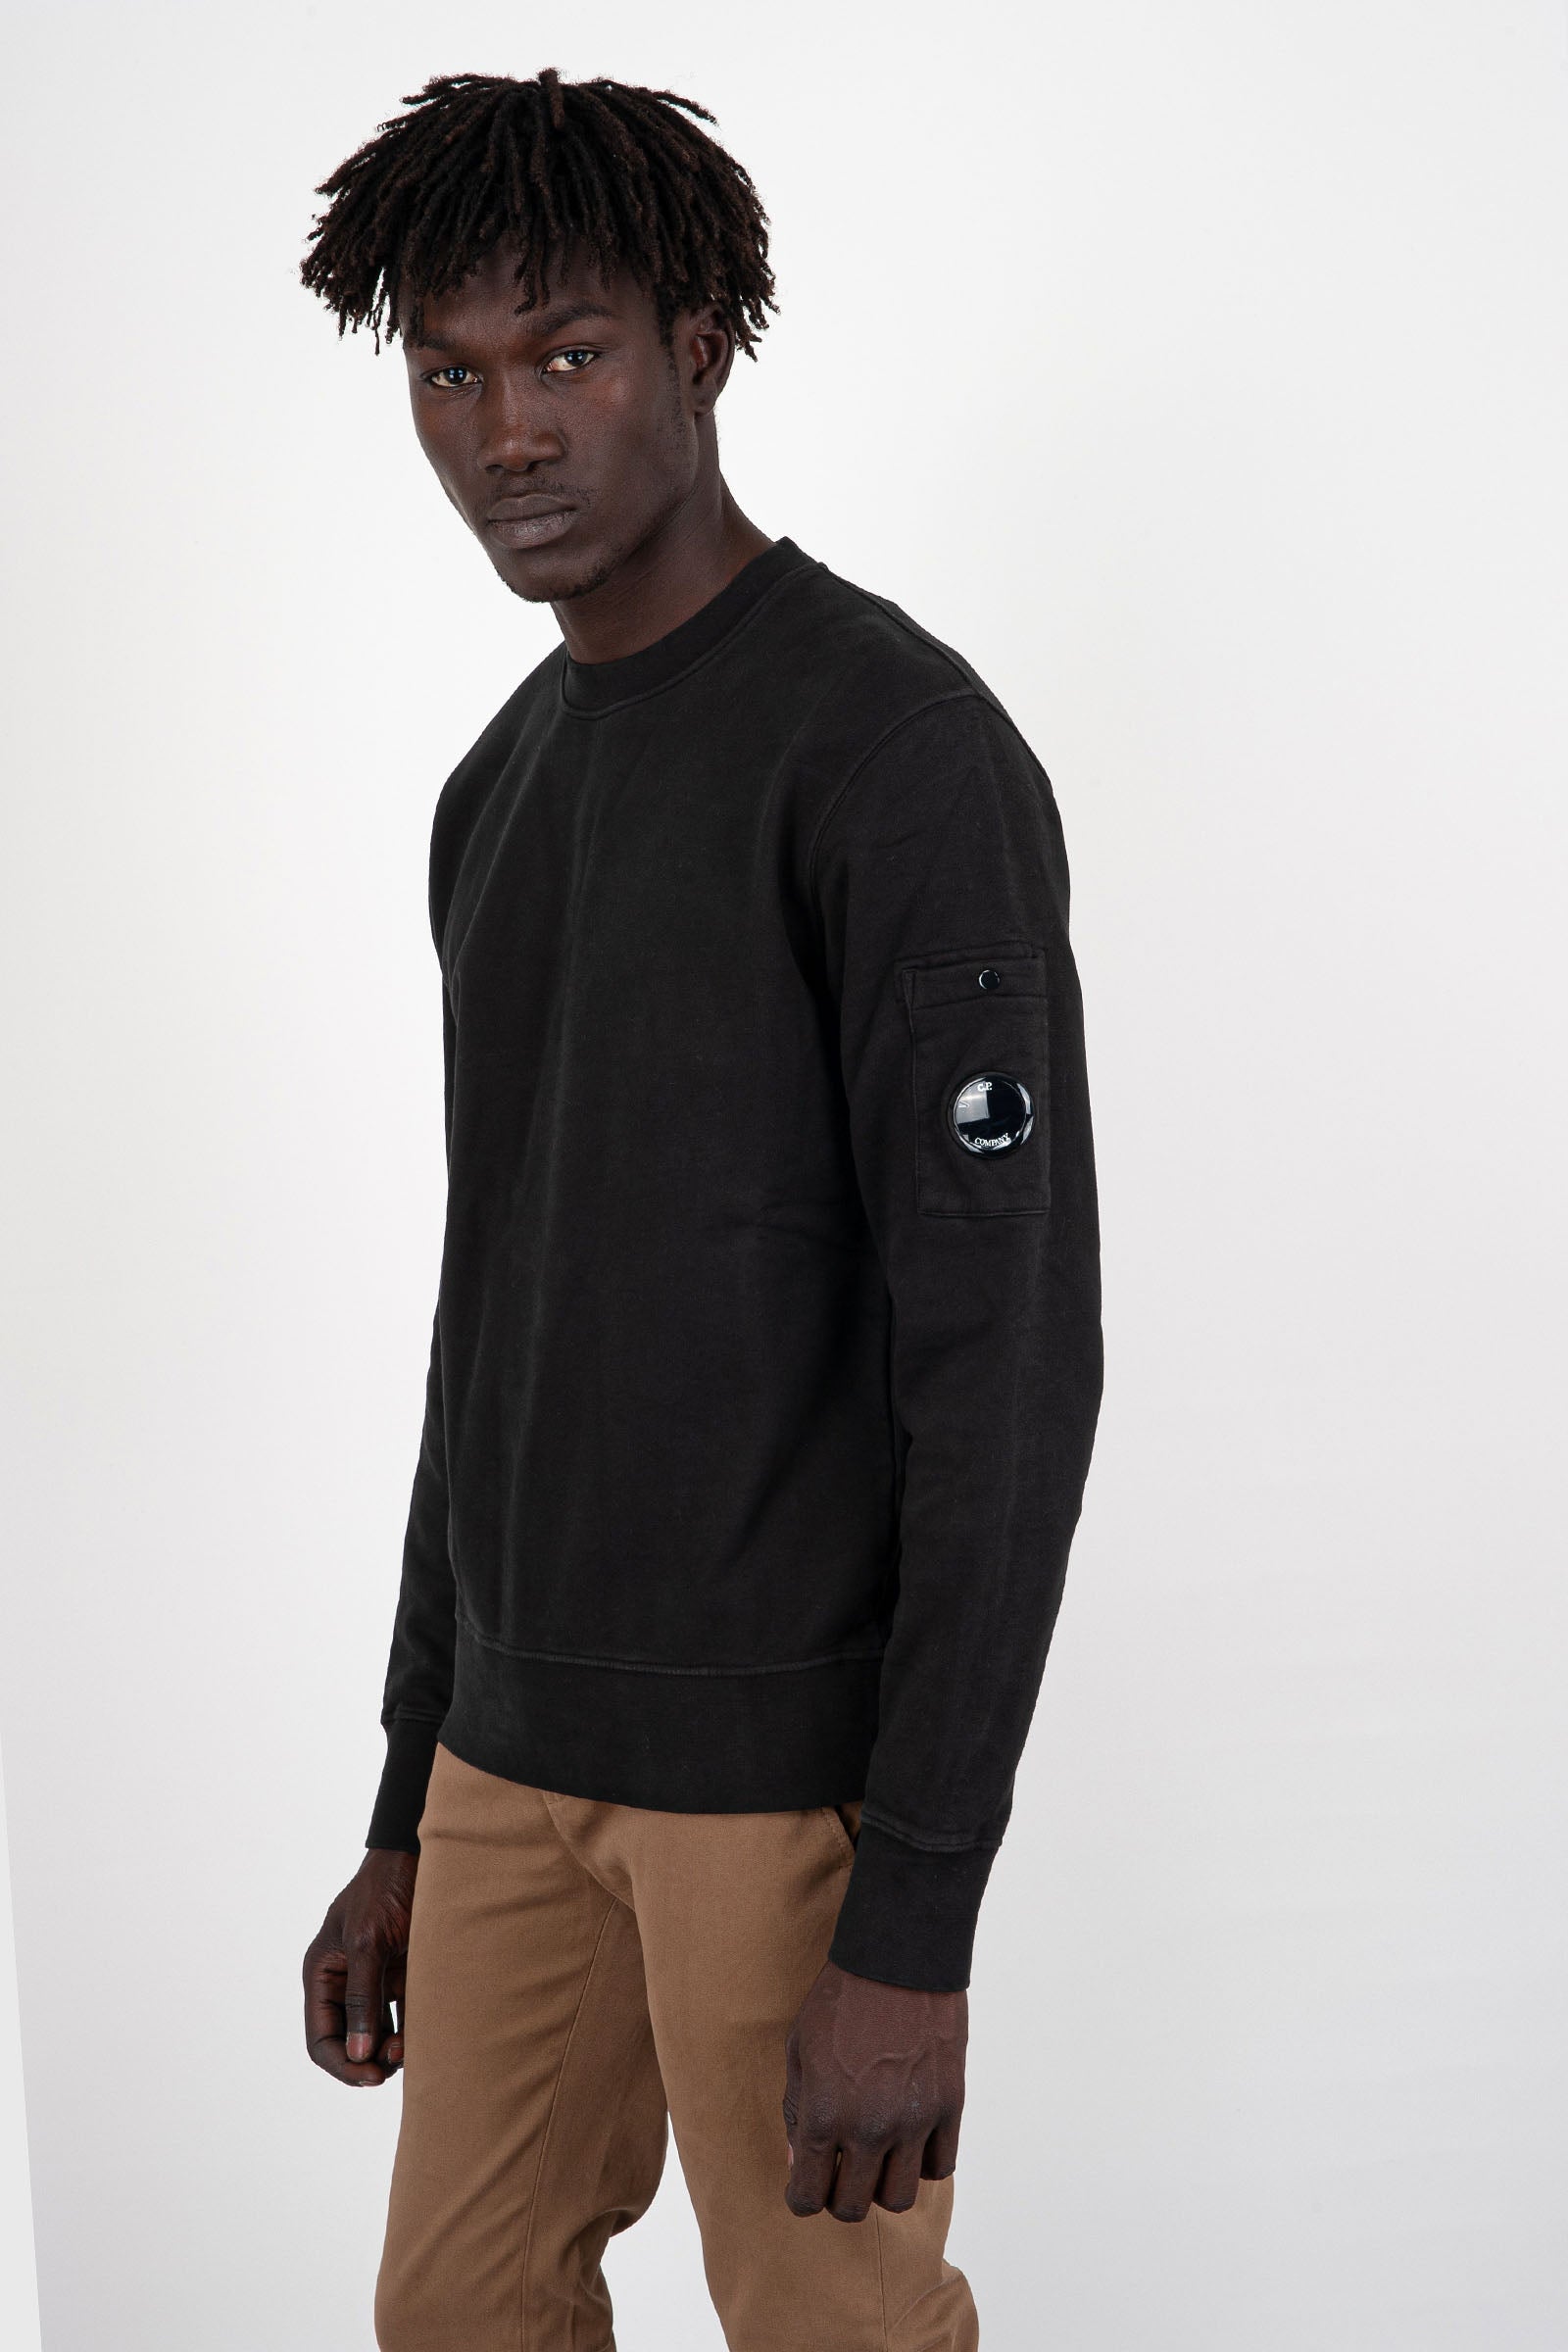 Diagonal Fleece Brushed Emerized Black Men's Sweatshirt - 3